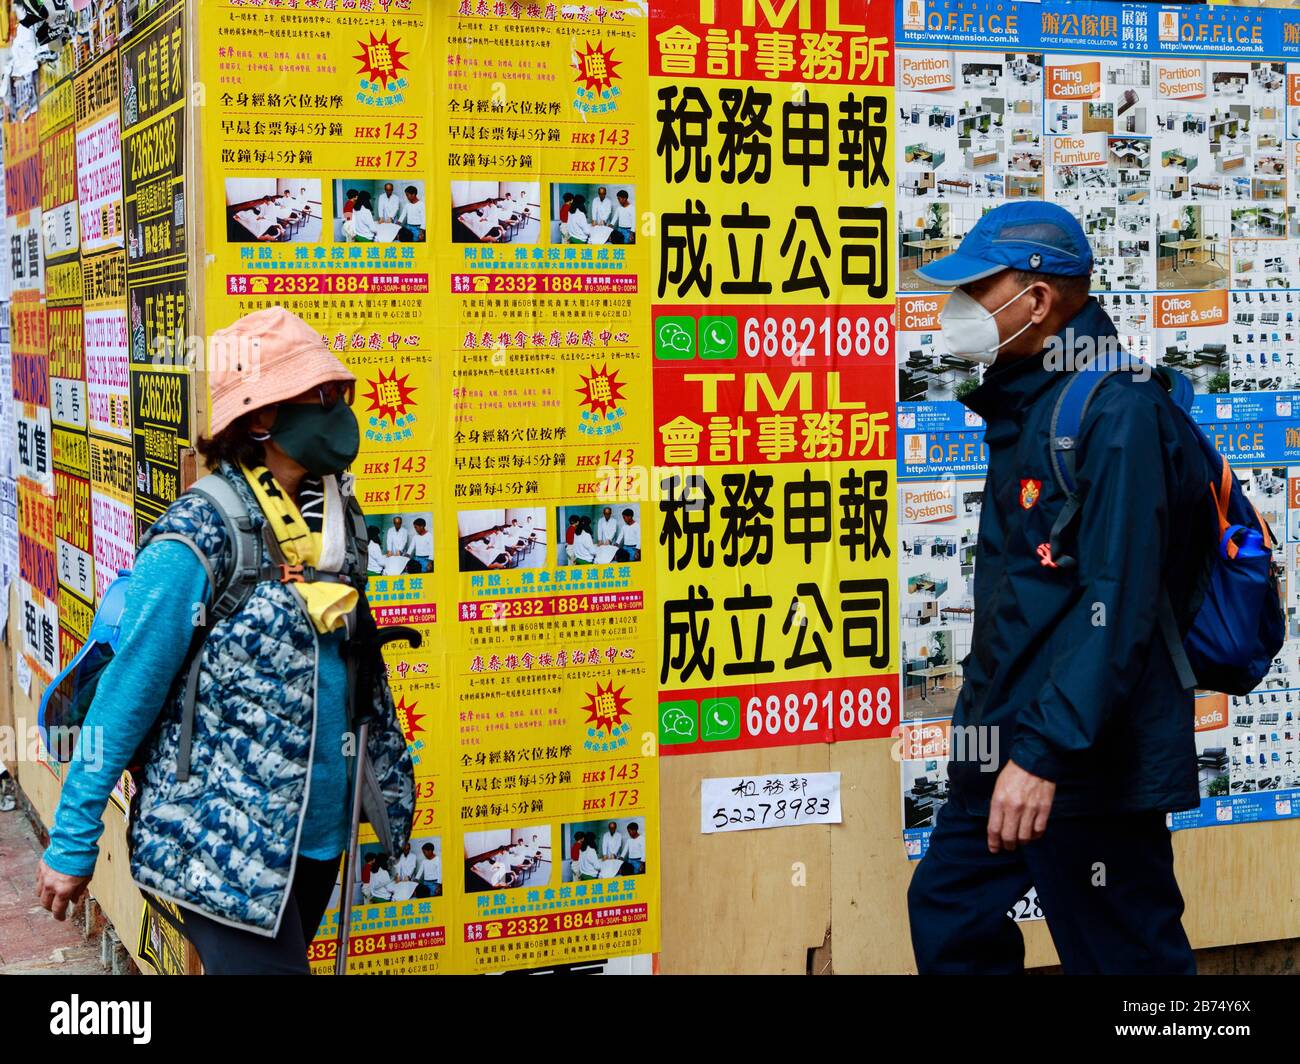 People wear mask walk on street in Hong Kong. Stock Photo